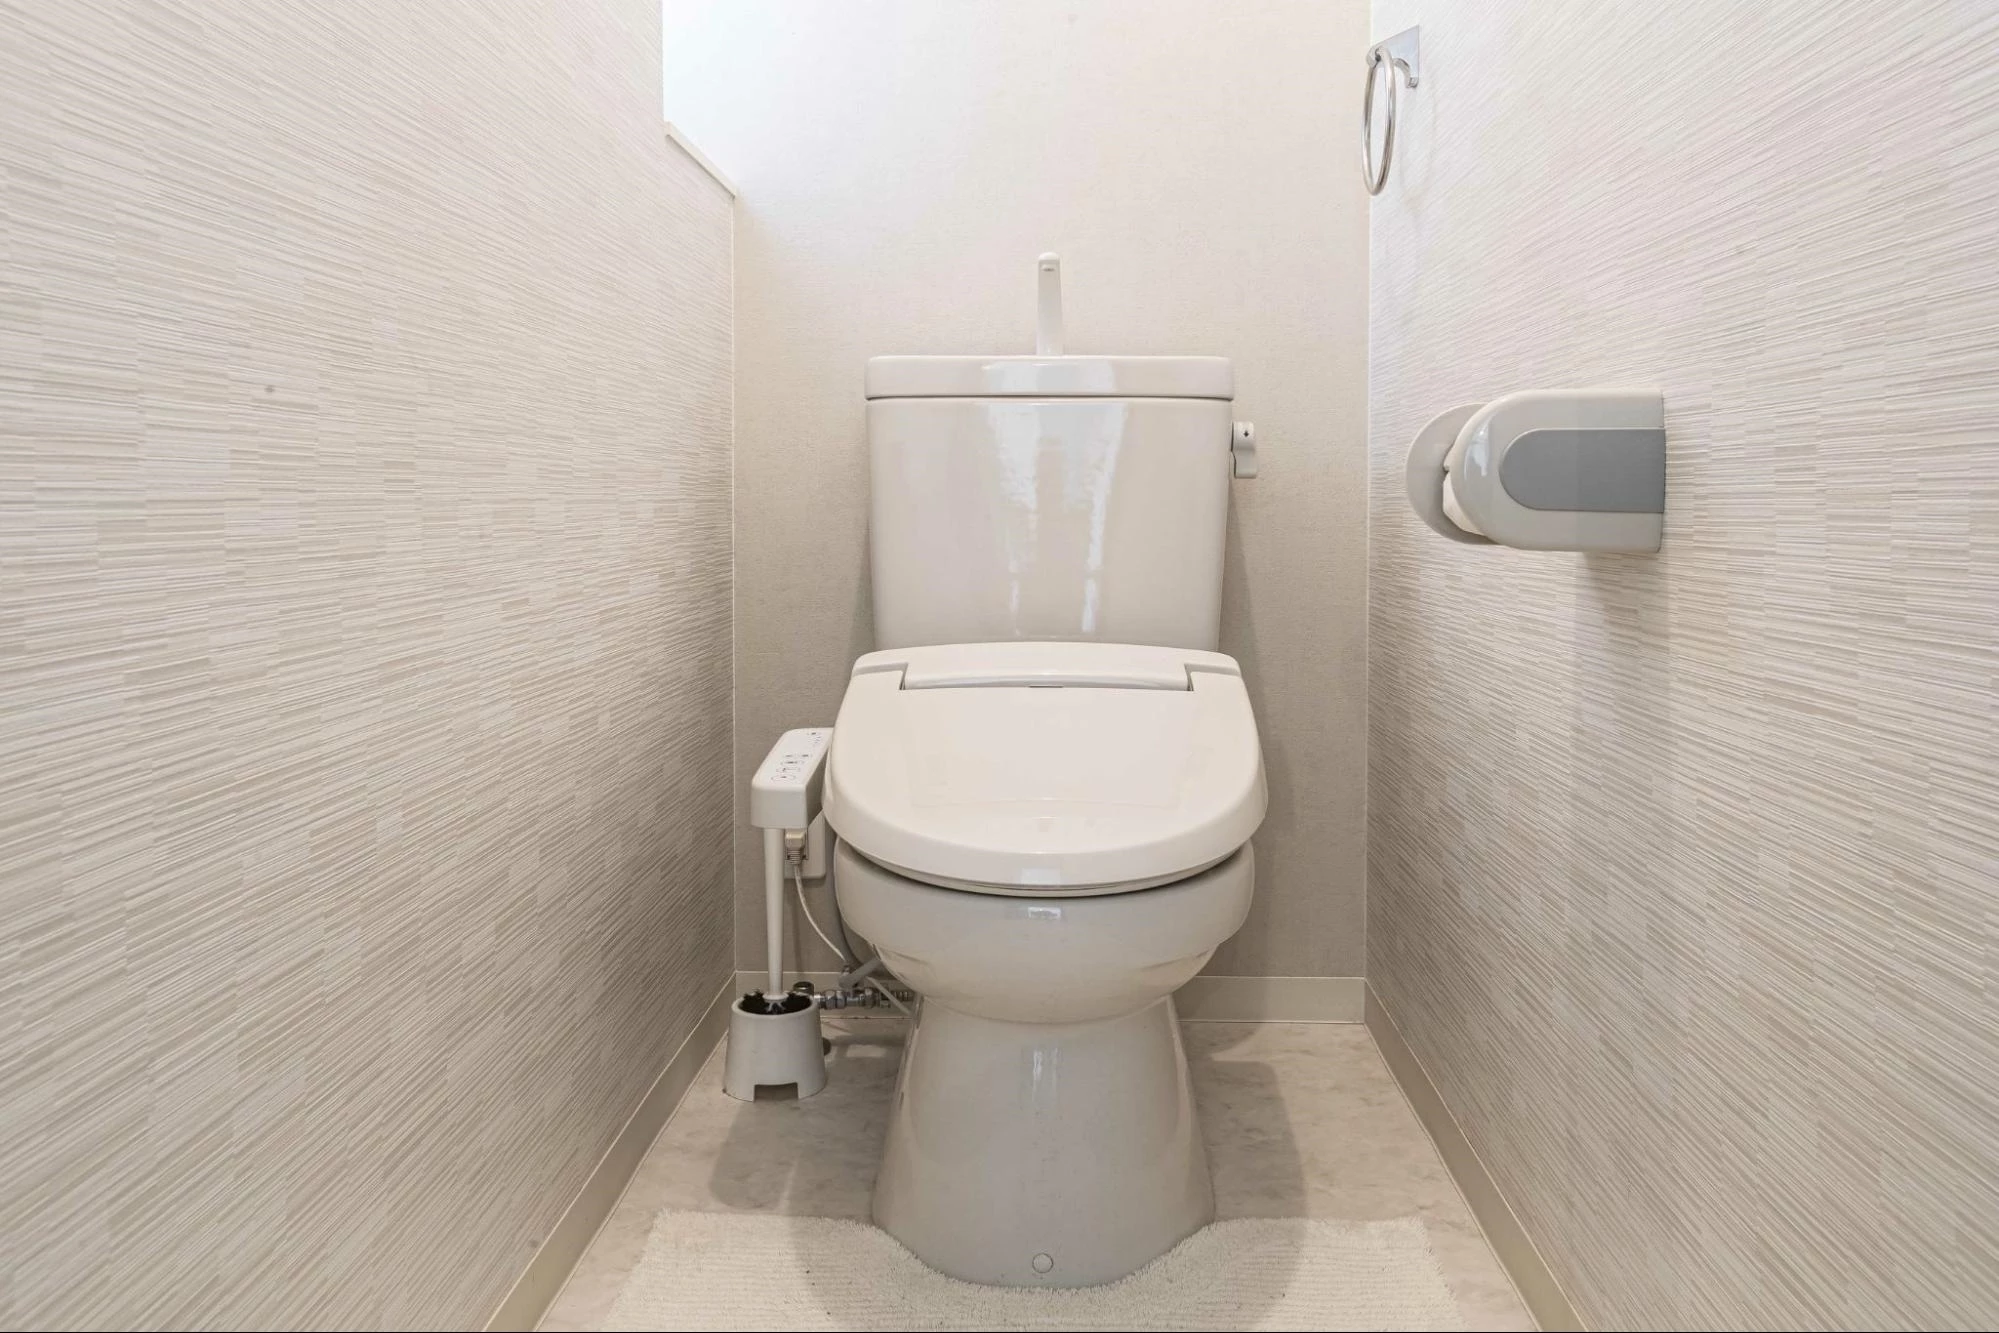 リフレッシュ シャワートイレ タンク付 通販(卸価格)|トイレ取替機能部ならプロストア ダイレクト